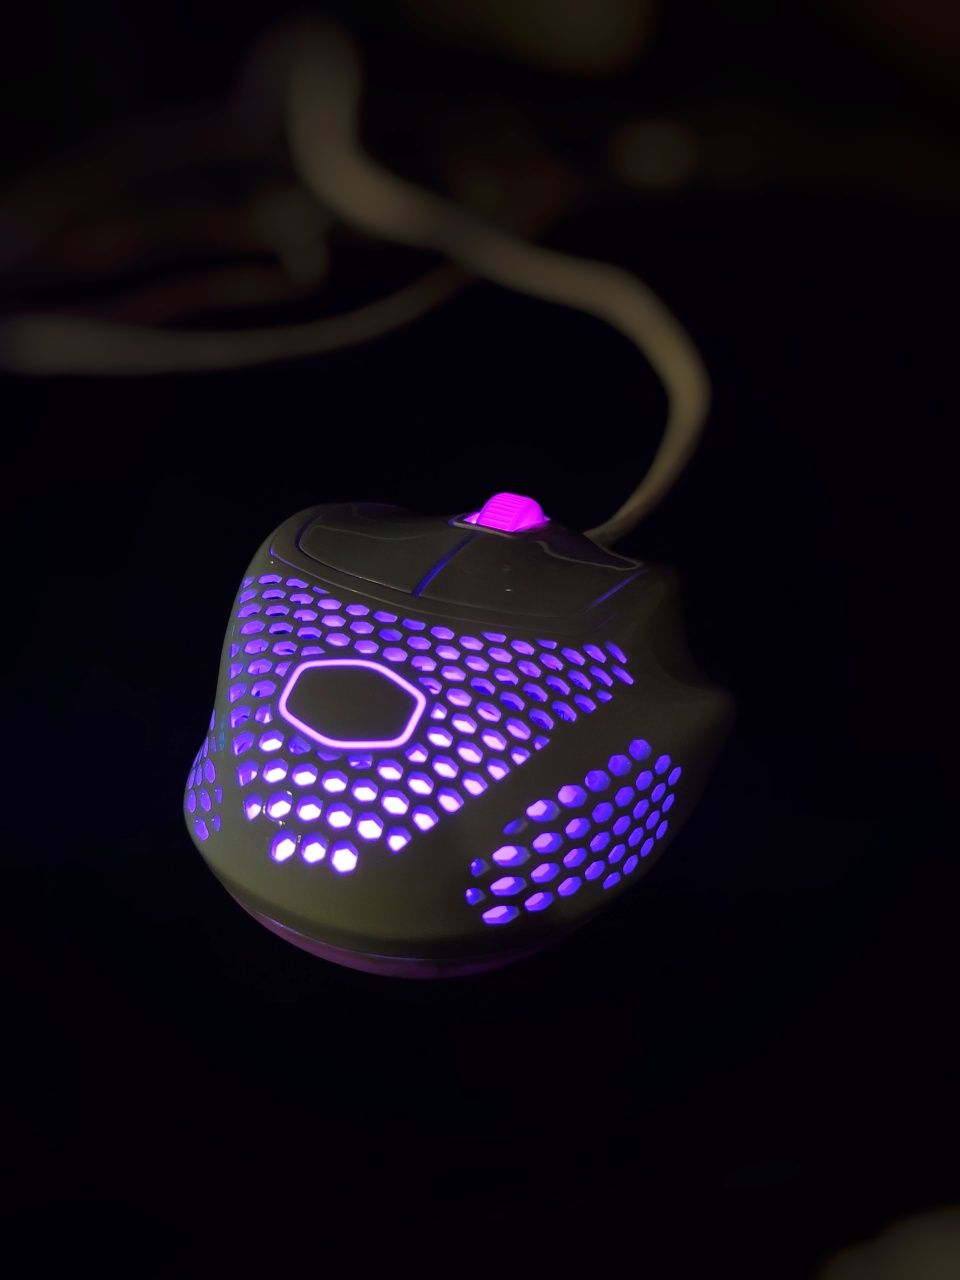 Геймърска мишка CoolerMaster MM720 RGB ултра лека 50гр